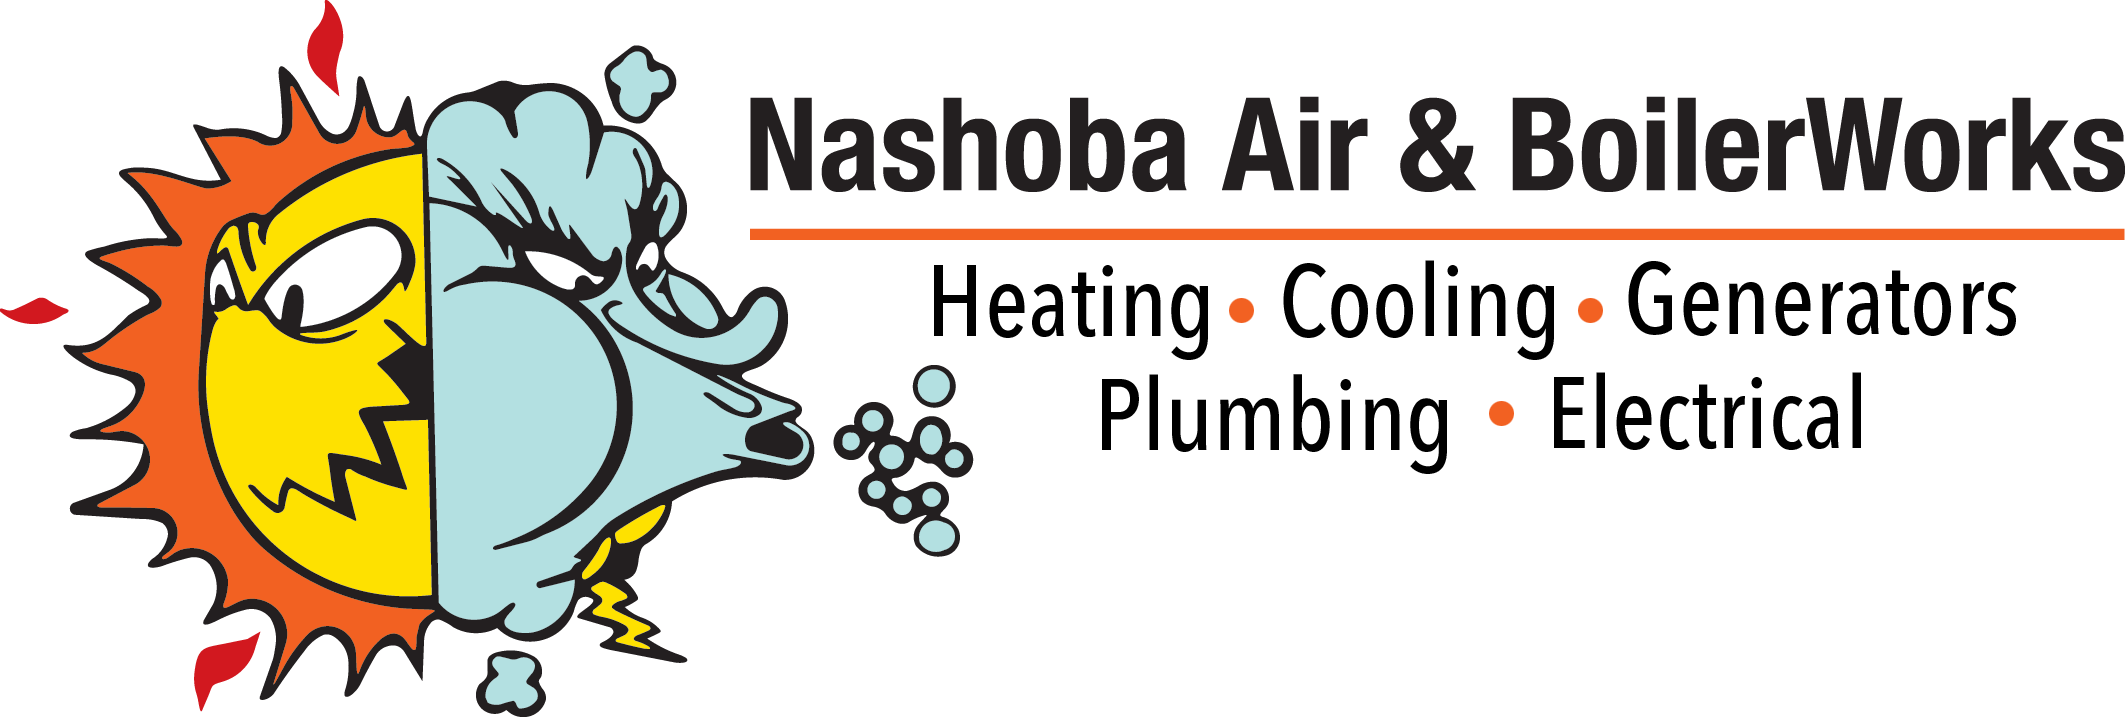 Nashoba Air and Boilerworks logo